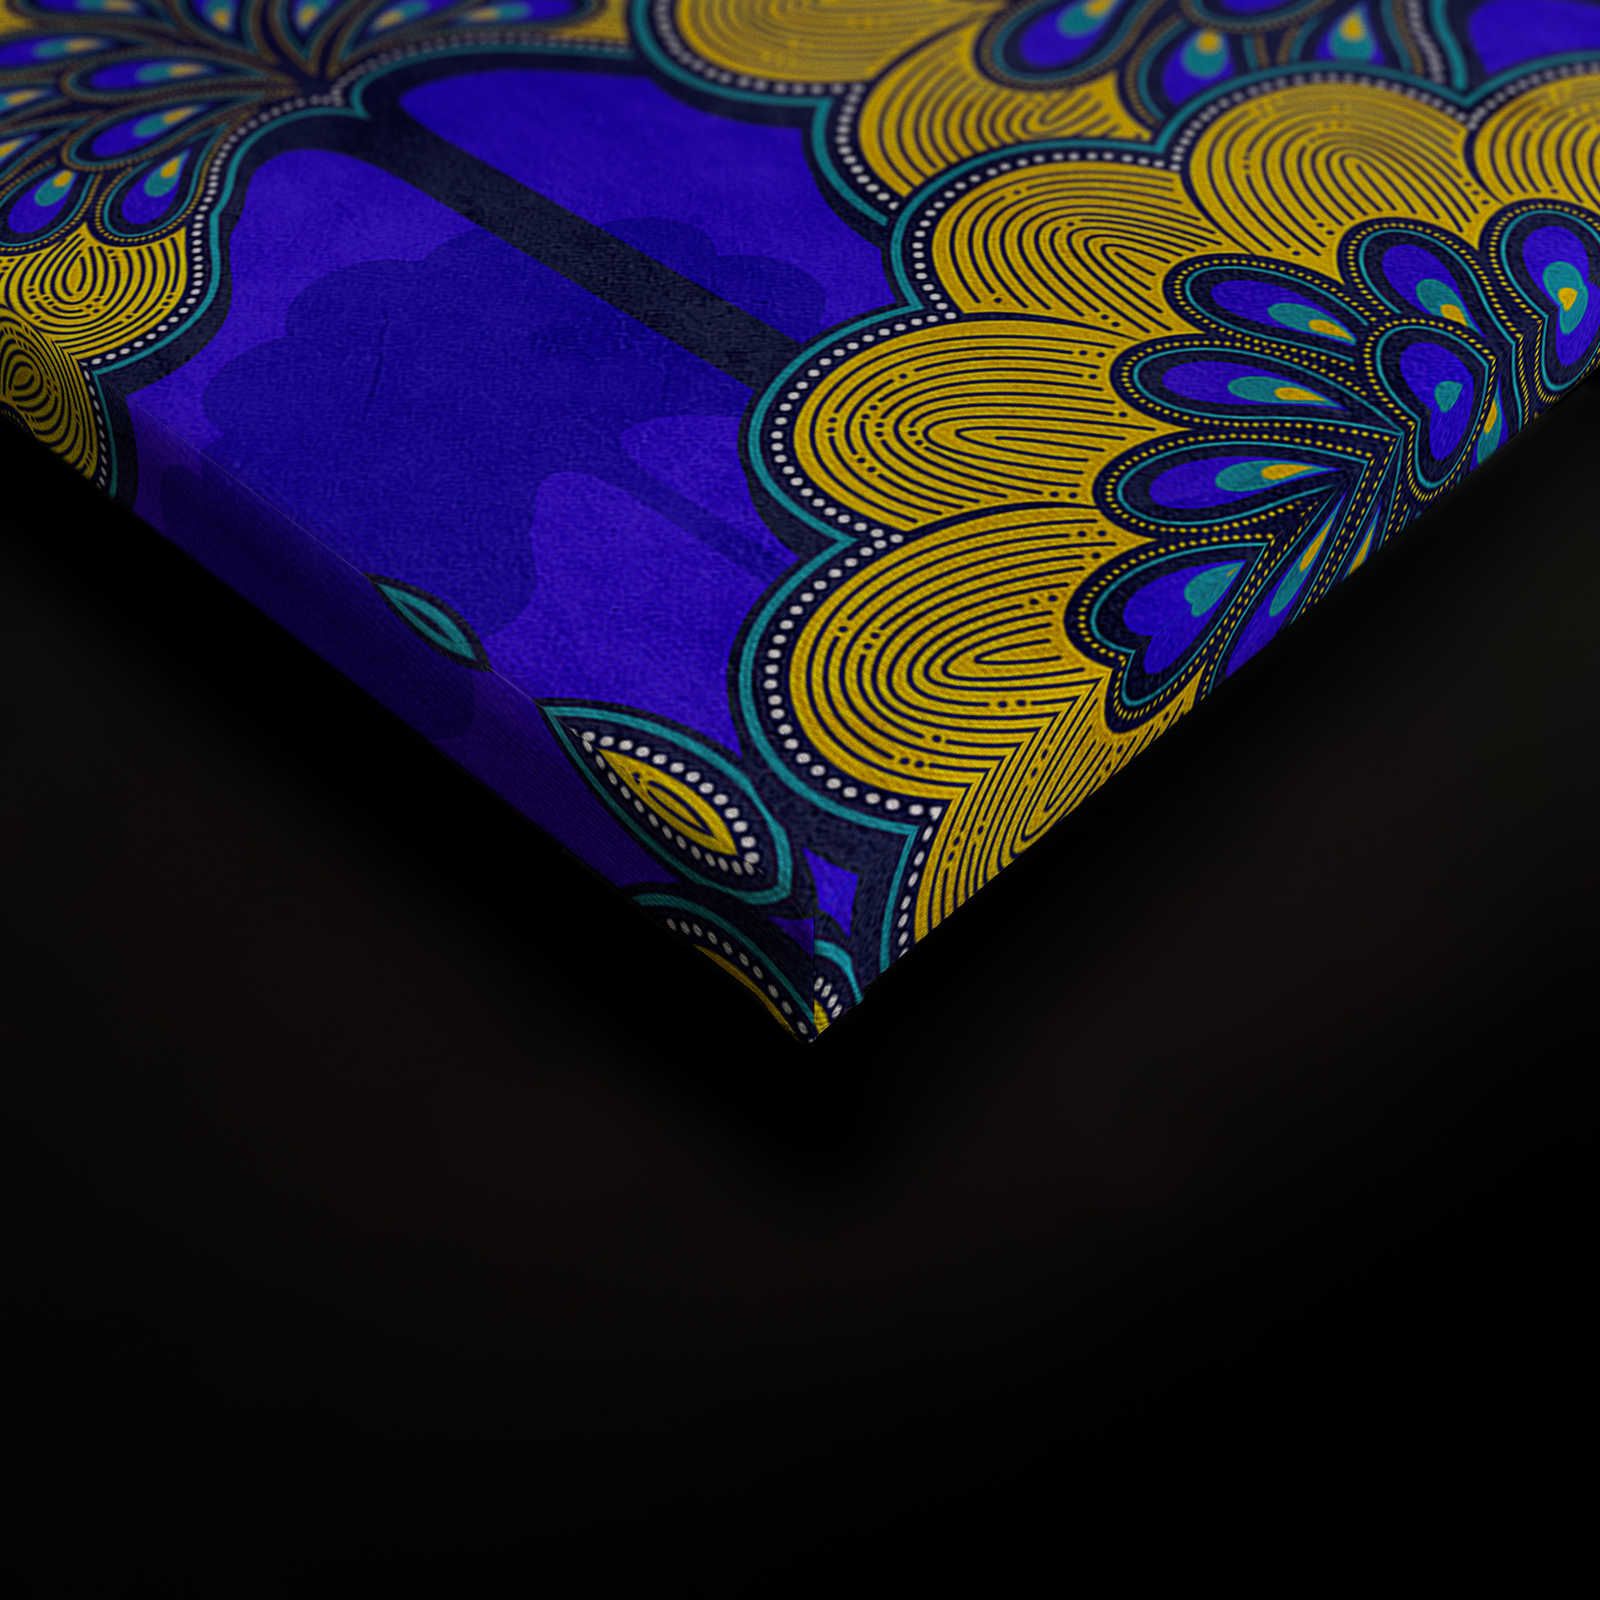             Dakar 1 - Toile motif tissu africain bleu & jaune - 0,90 m x 0,60 m
        